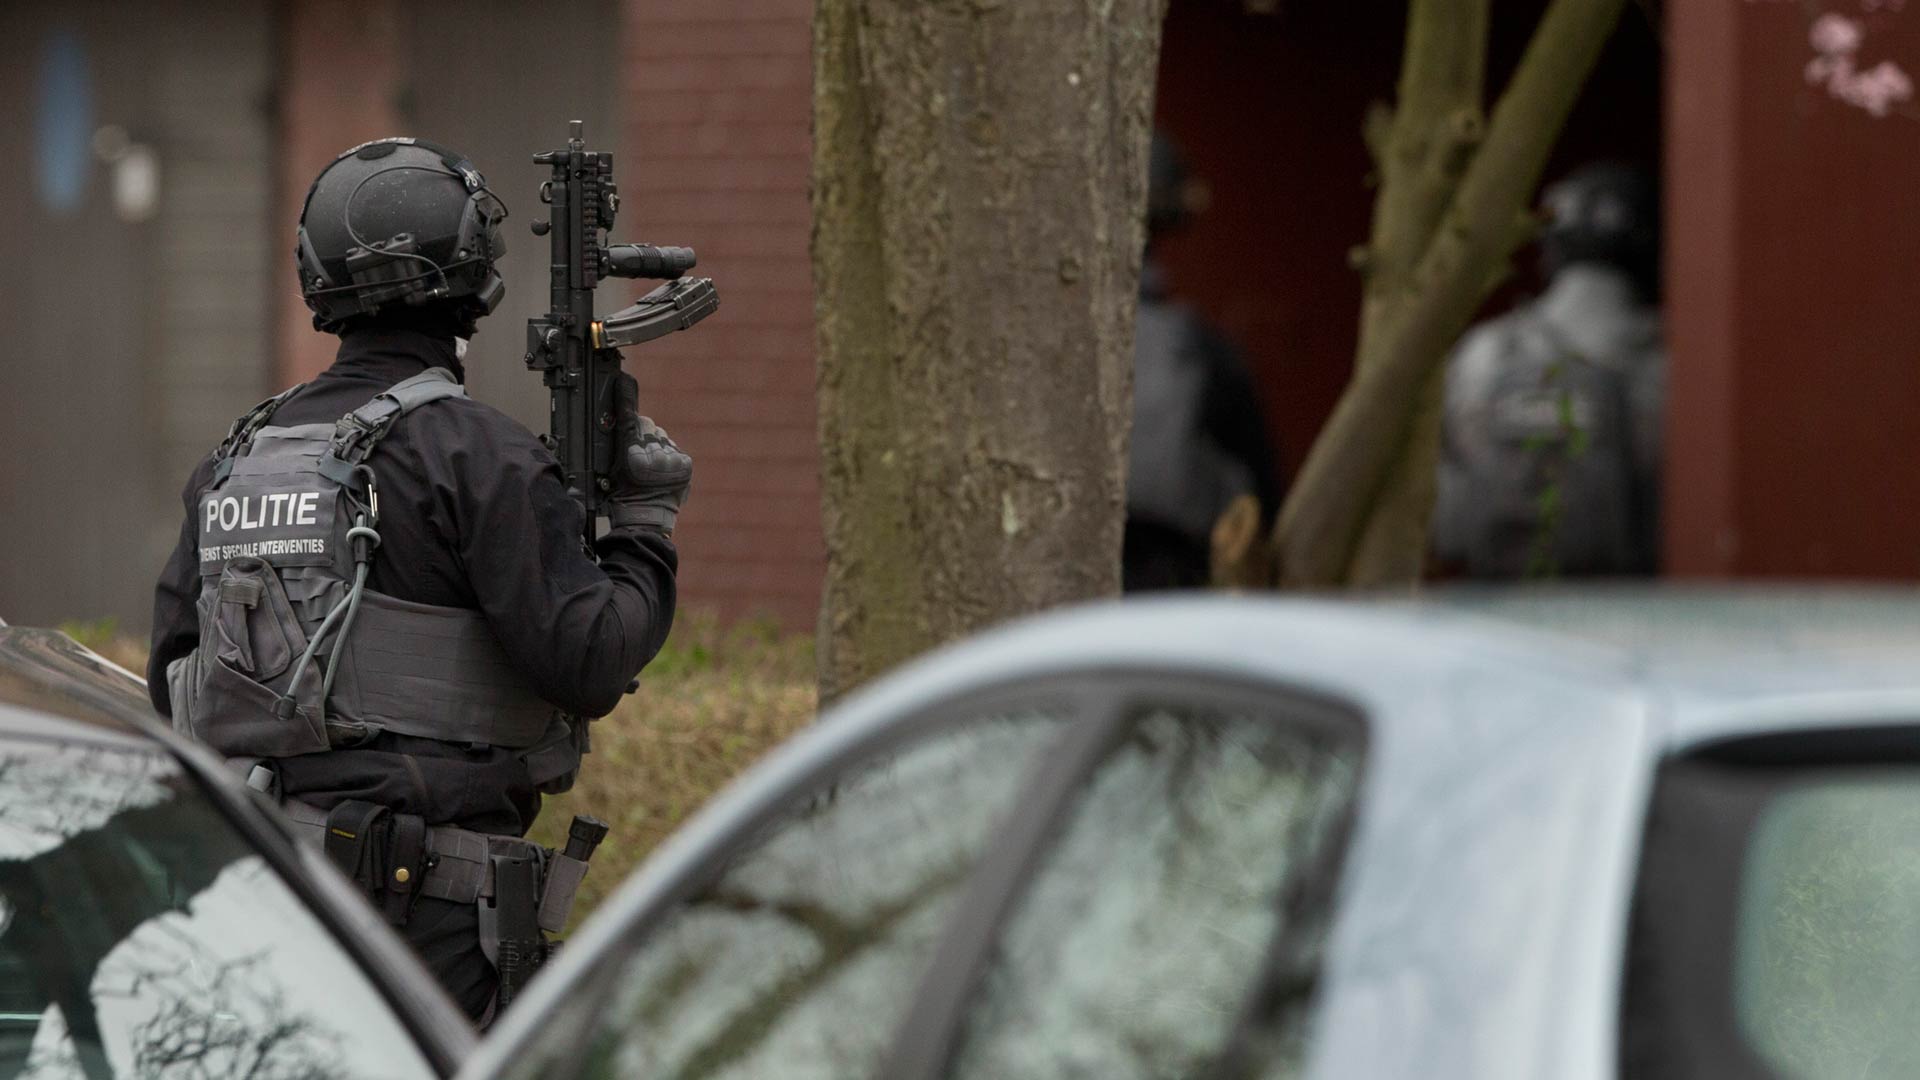 En menos de un minuto: La Policía detiene al principal sospechoso del atentado terrorista de Utrecht